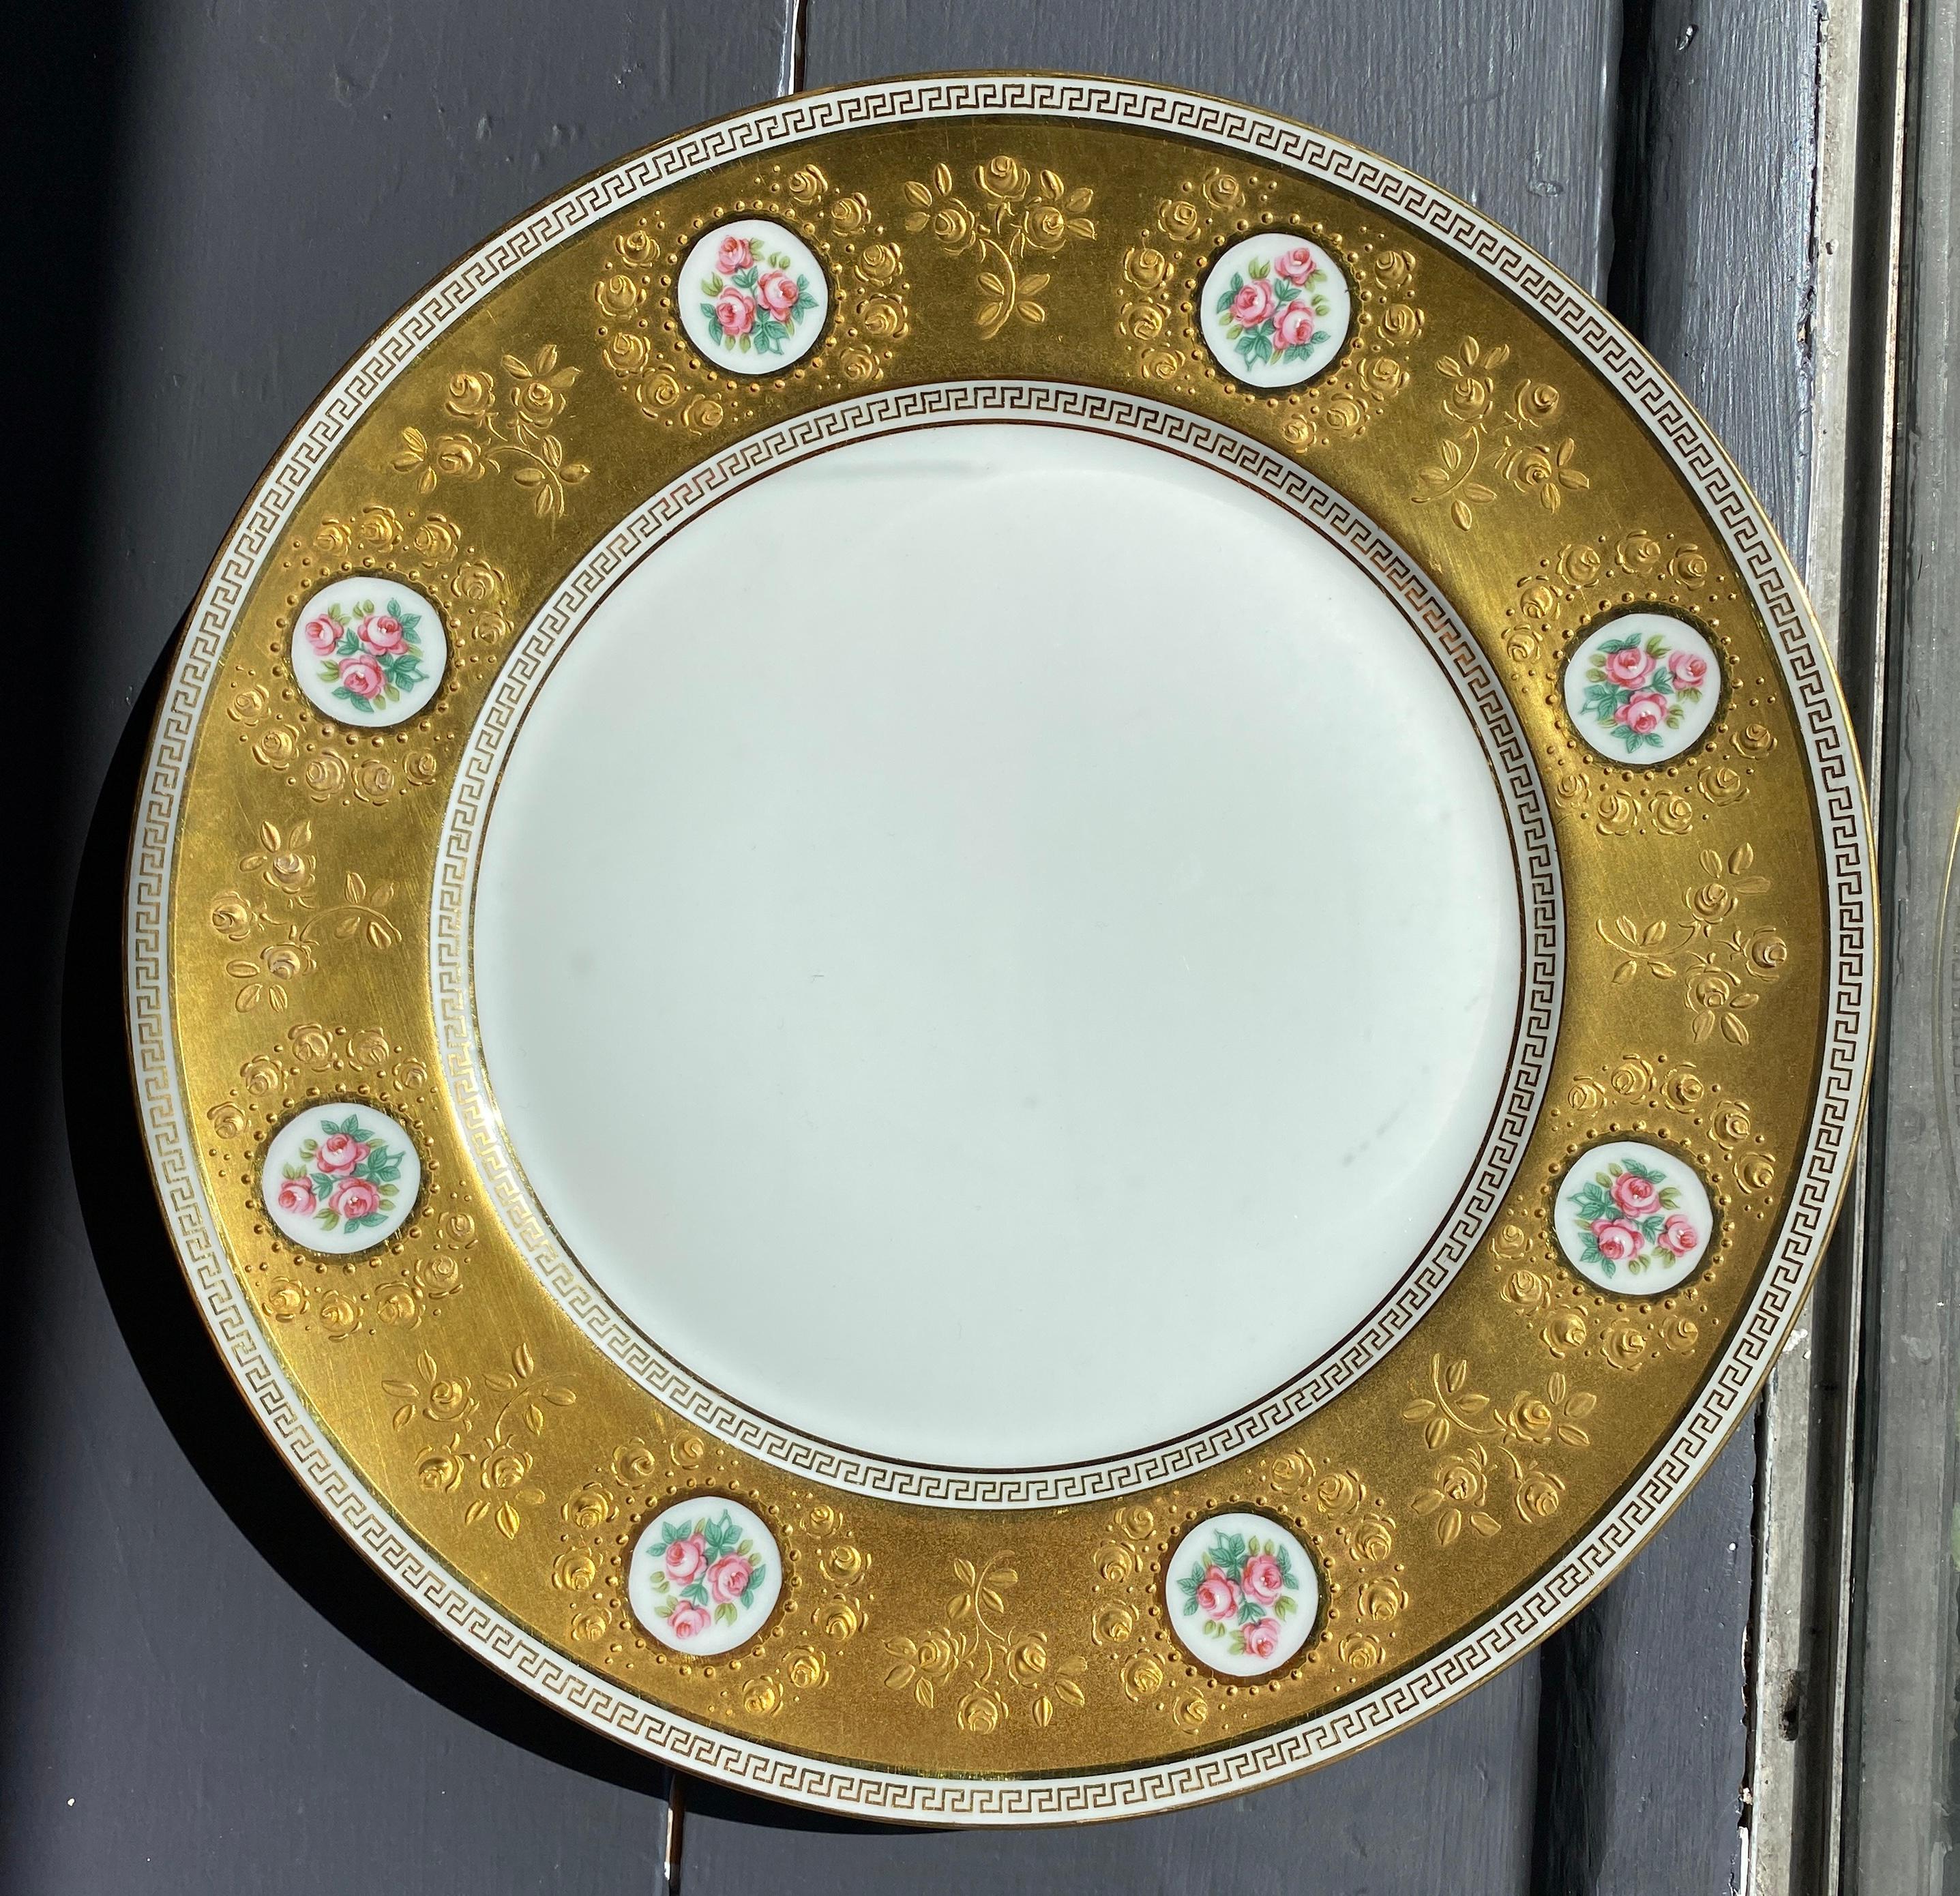 La vaisselle Duchesse de Raynaud est fabriquée à la main par des artisans français en porcelaine de Limoges. Comme pour toutes les collections d'incrustation d'or de la société, chaque motif est profondément gravé dans la porcelaine, peint à la main